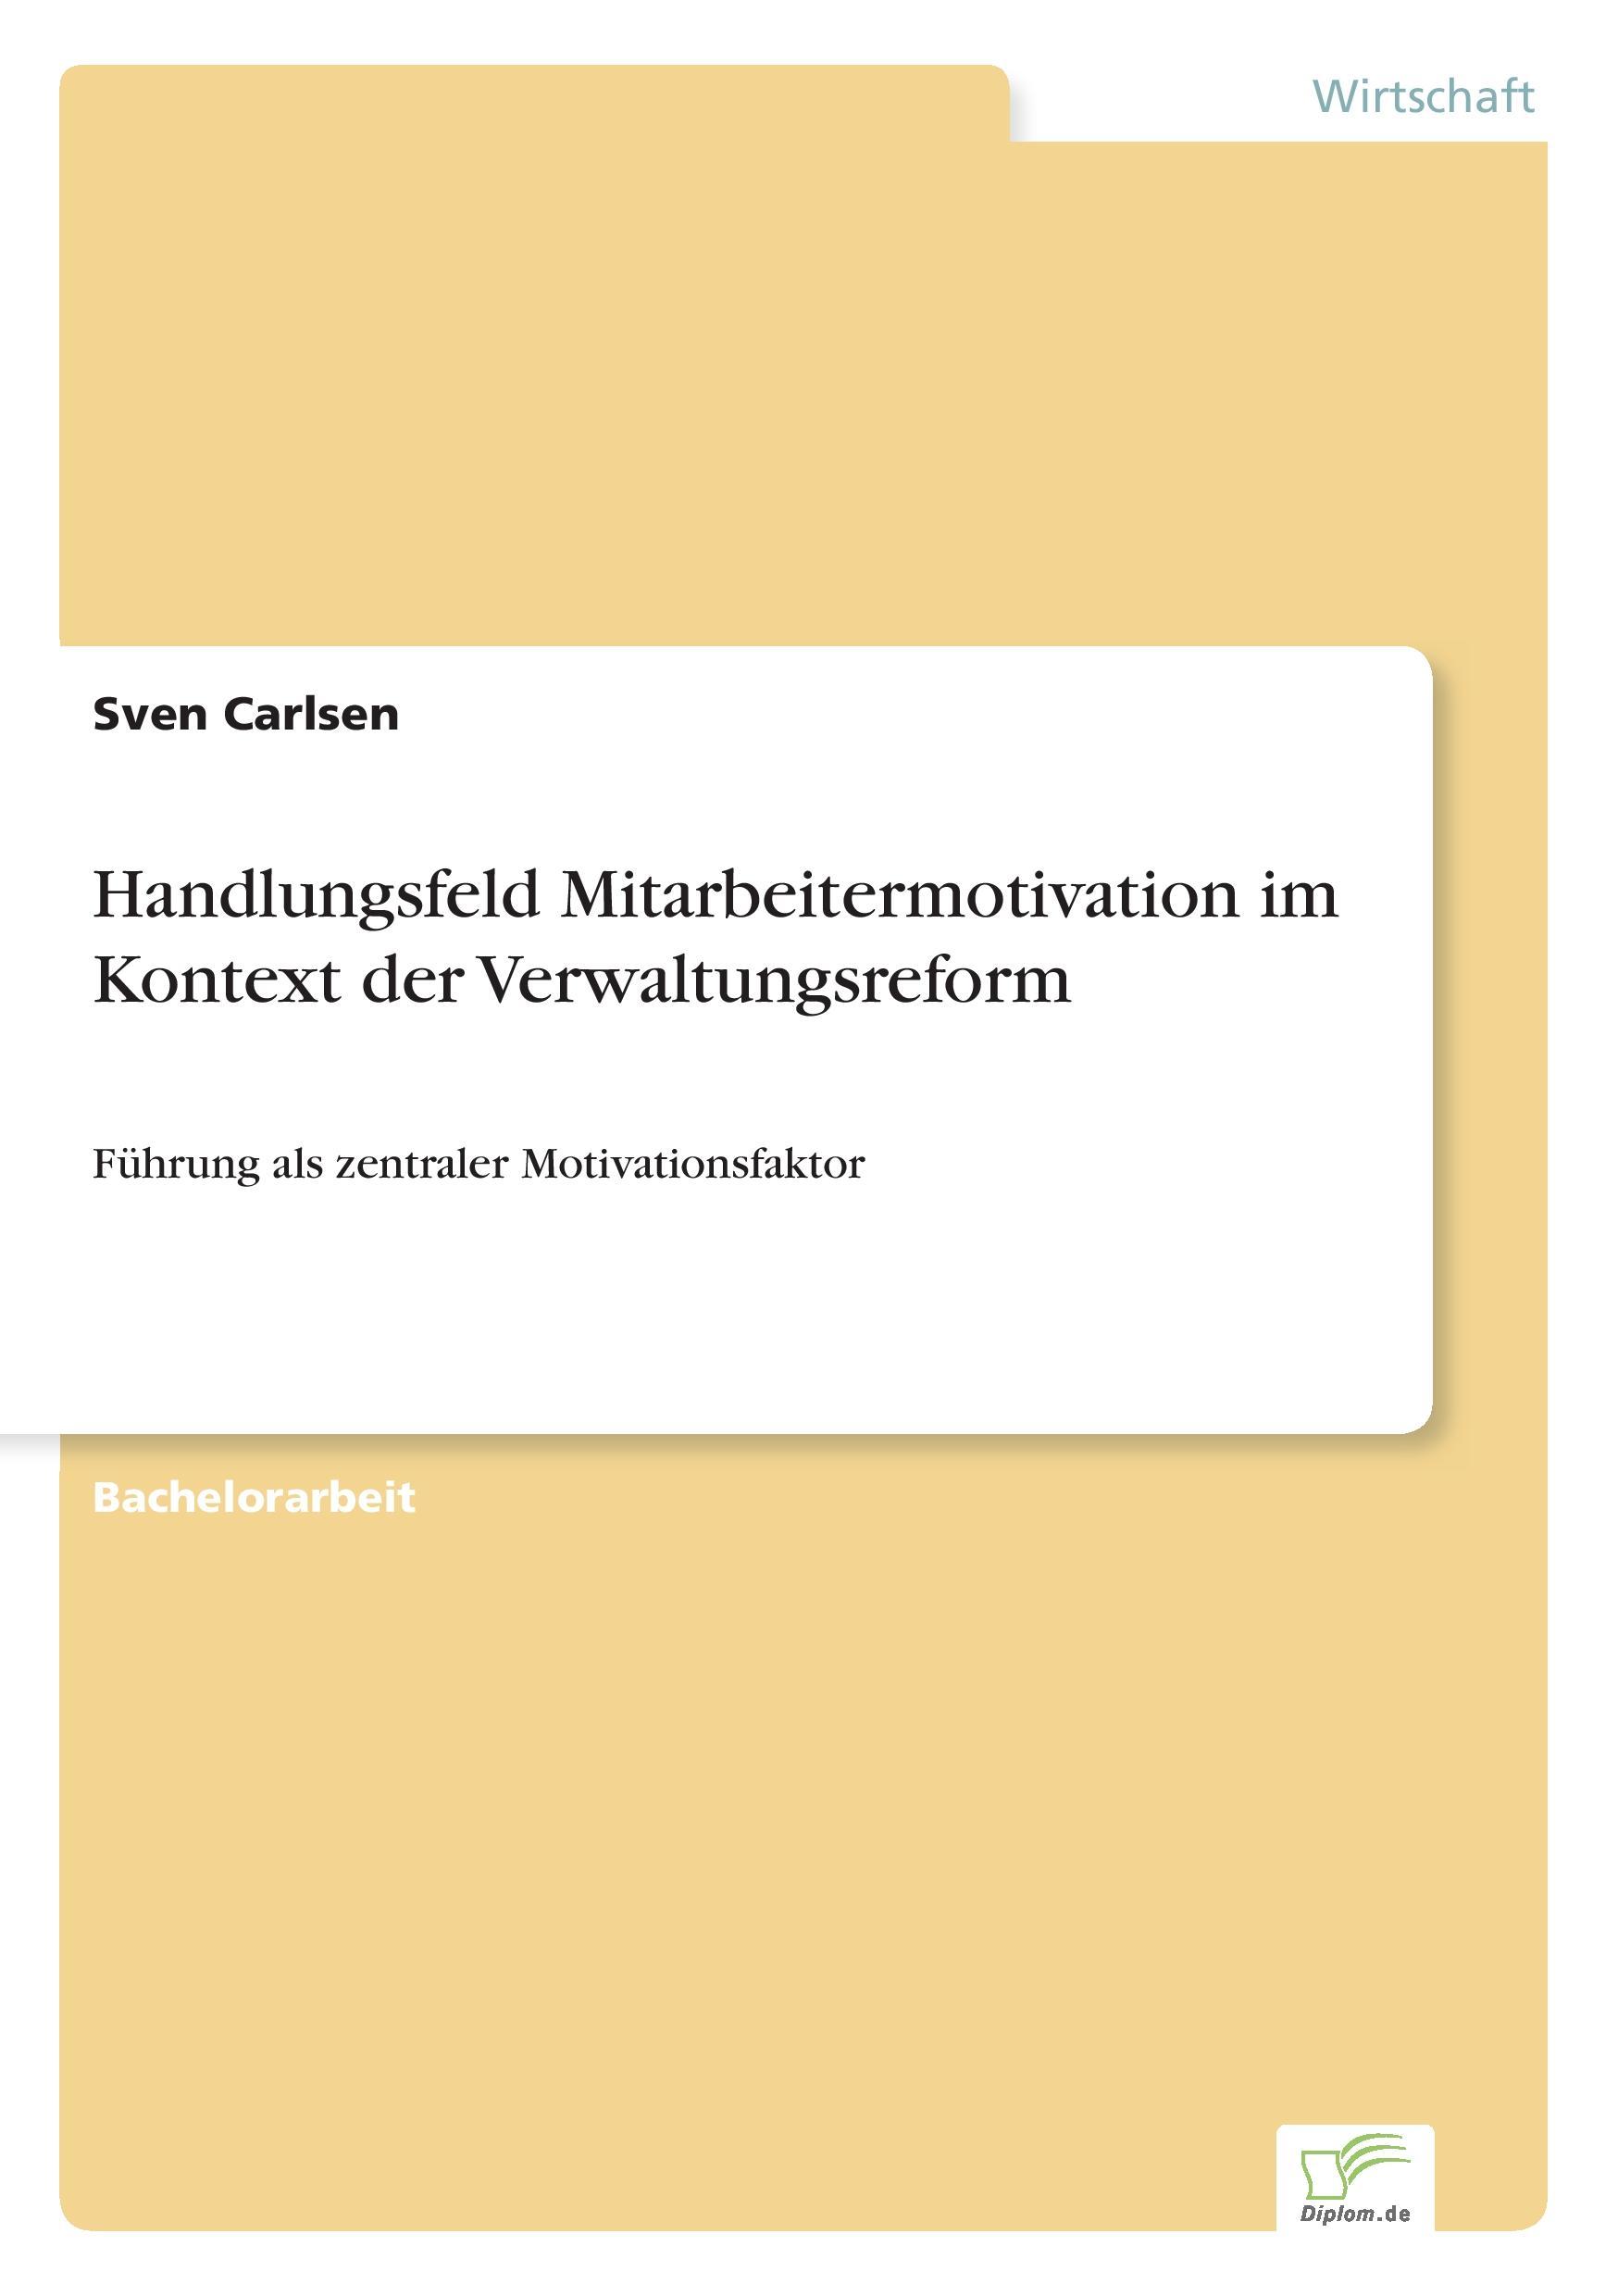 Handlungsfeld Mitarbeitermotivation im Kontext der Verwaltungsreform - Carlsen, Sven